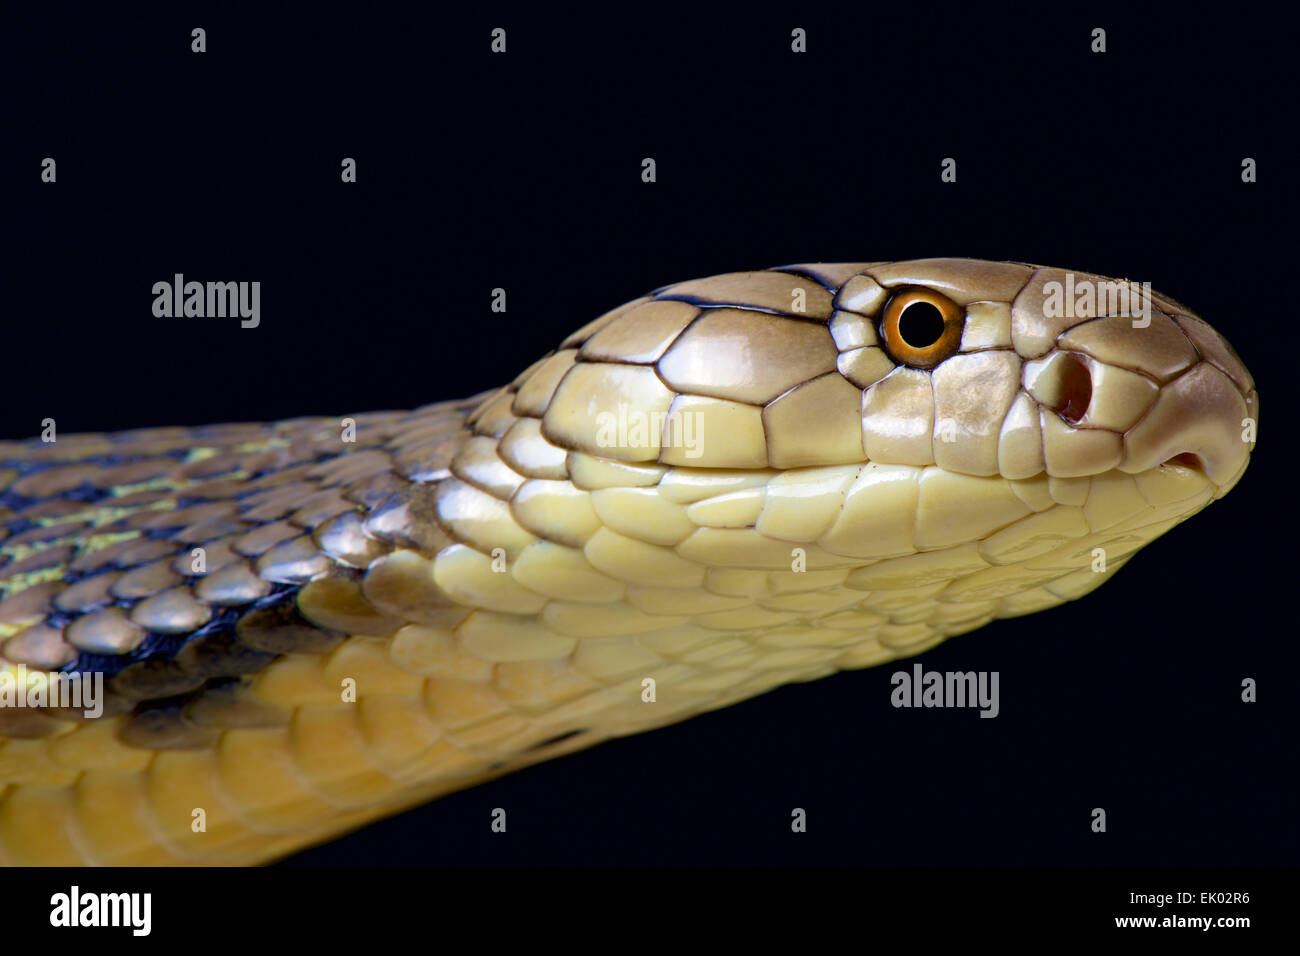 King Cobra (Ophiophagus hannah). Stock Photo